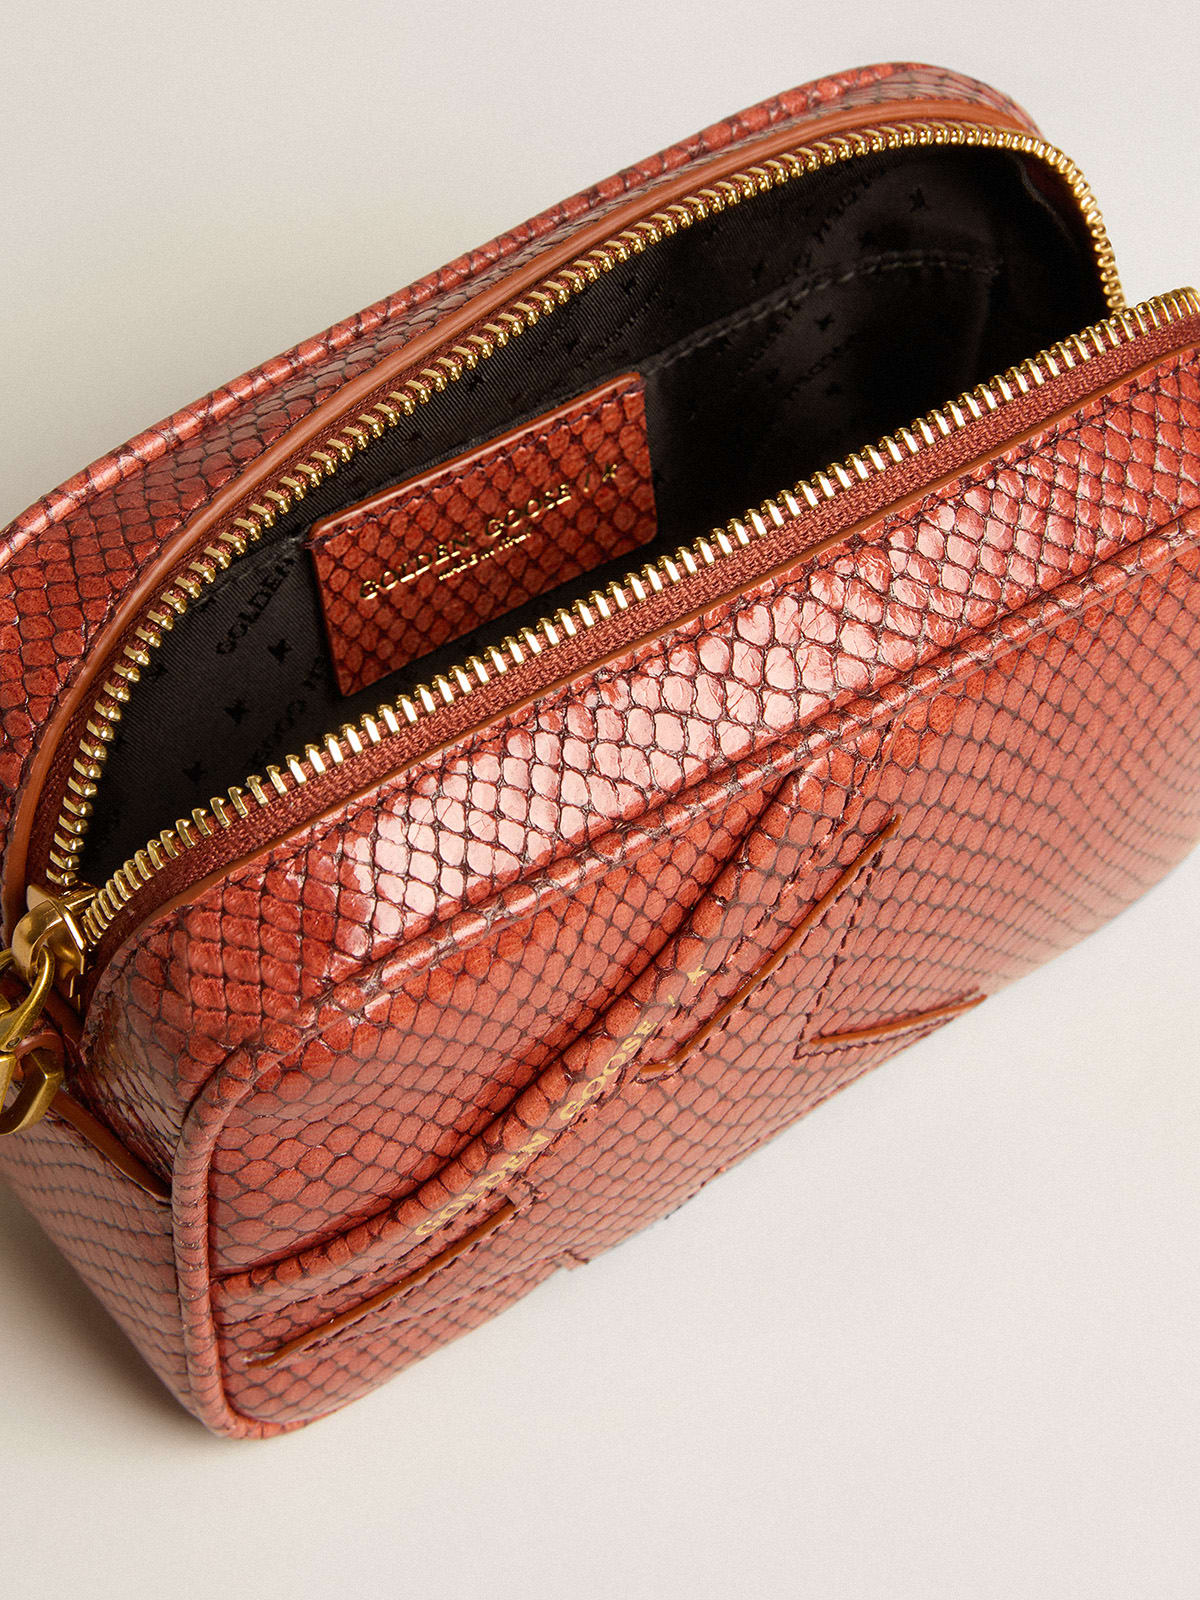 Golden Goose - Mini Star Bag en cuir à imprimé python de couleur rouille in 